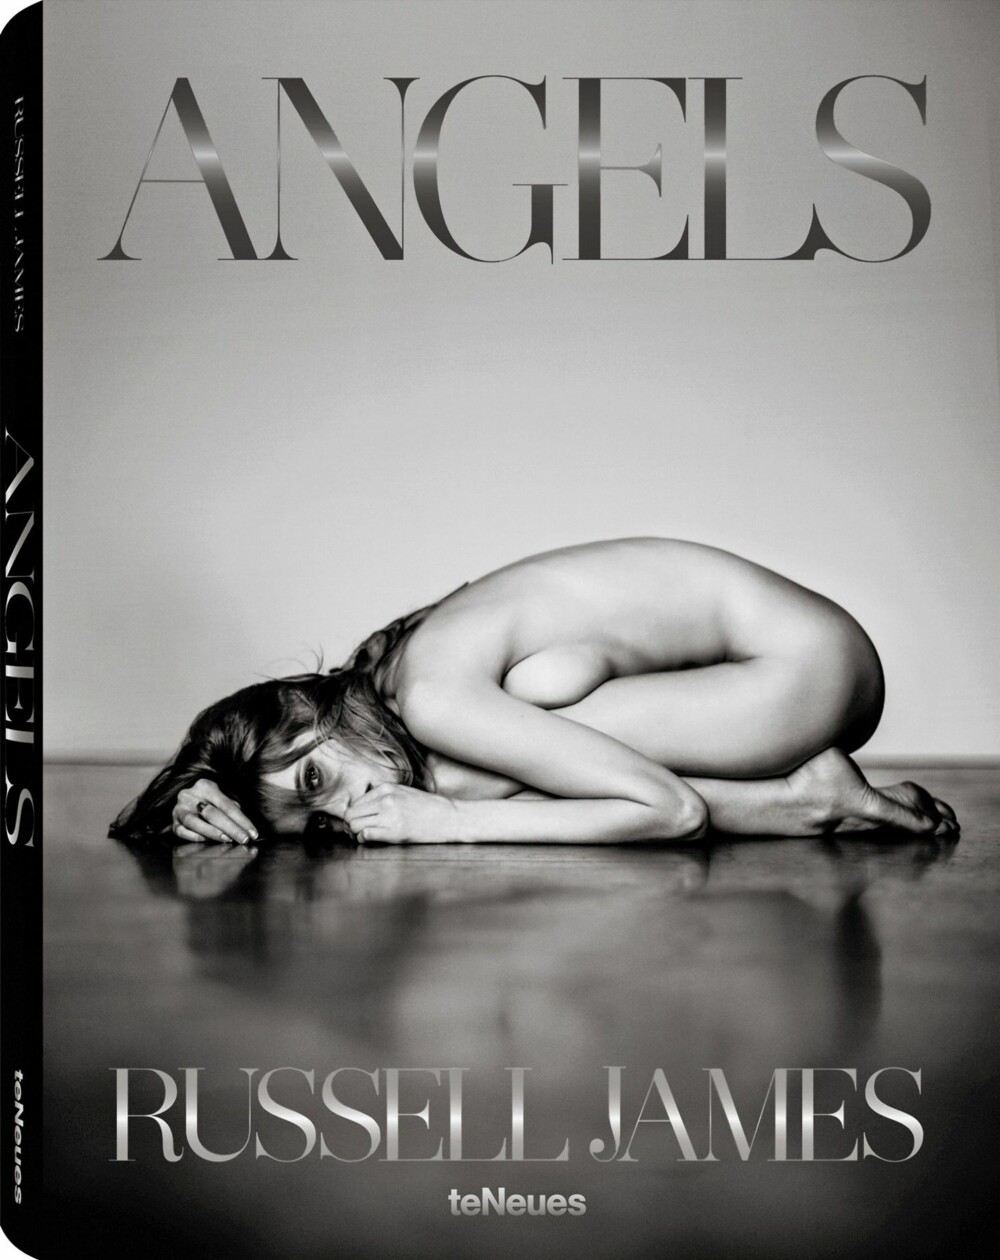 I «Angels» finner du 170 bilder over 304 sider. Noe å ønske seg i julegave kanskje?